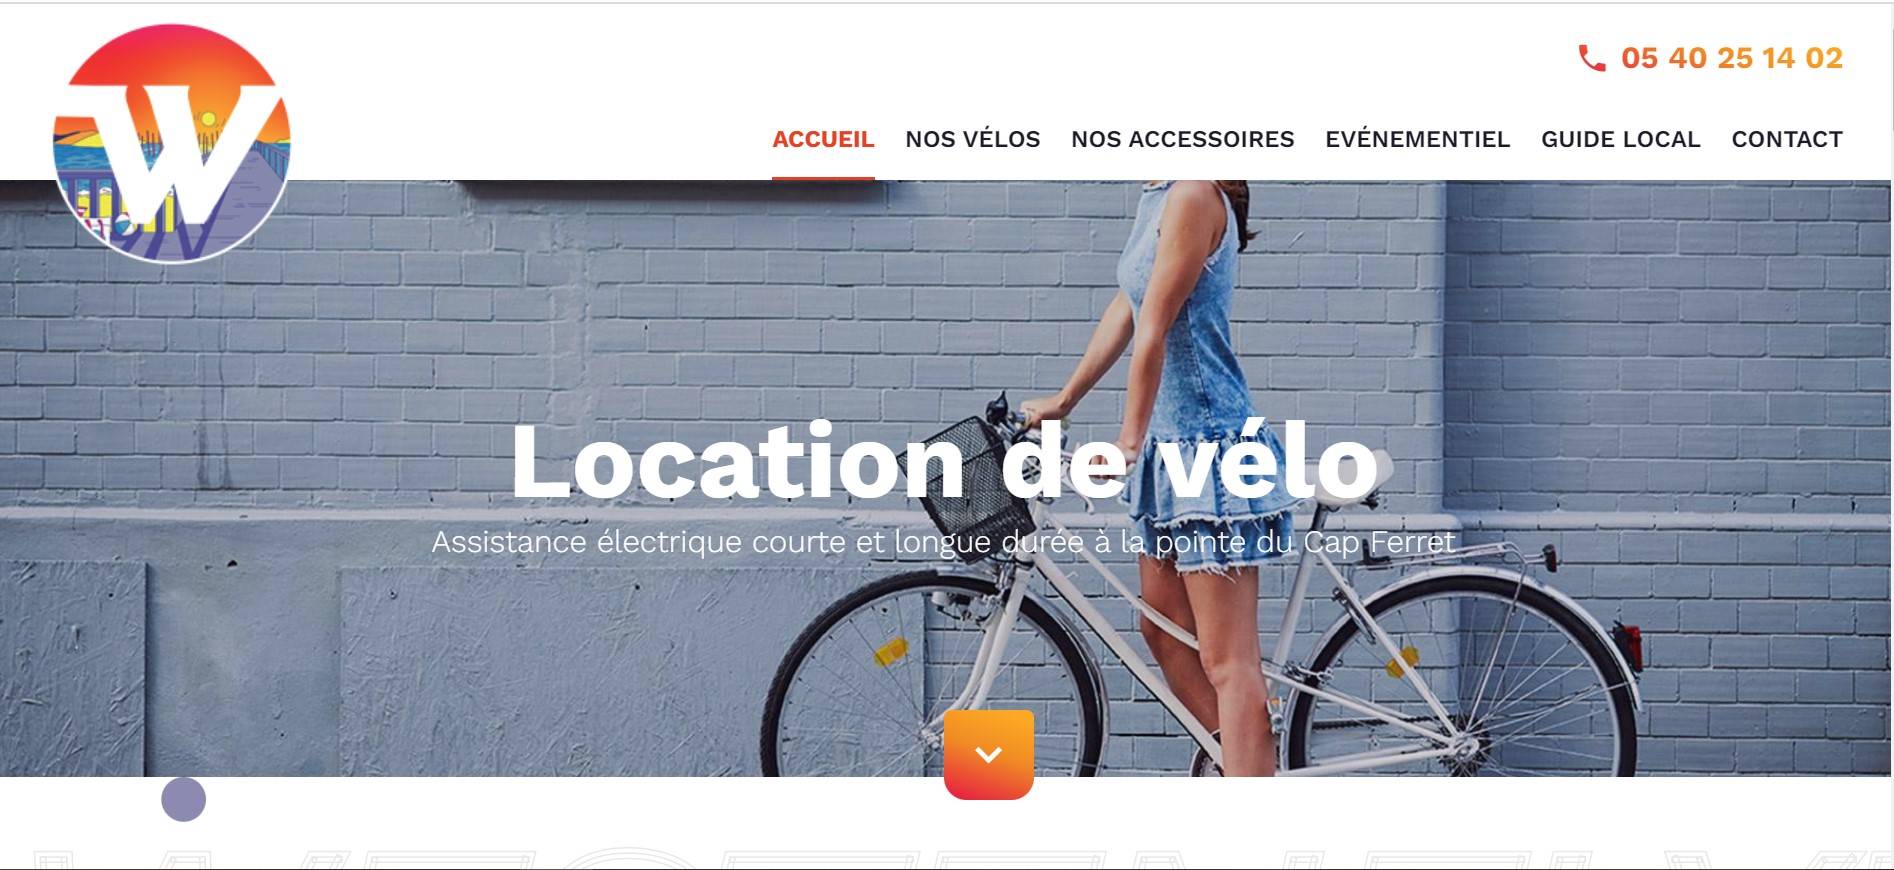 Location de vélo pas cher à Bordeaux 